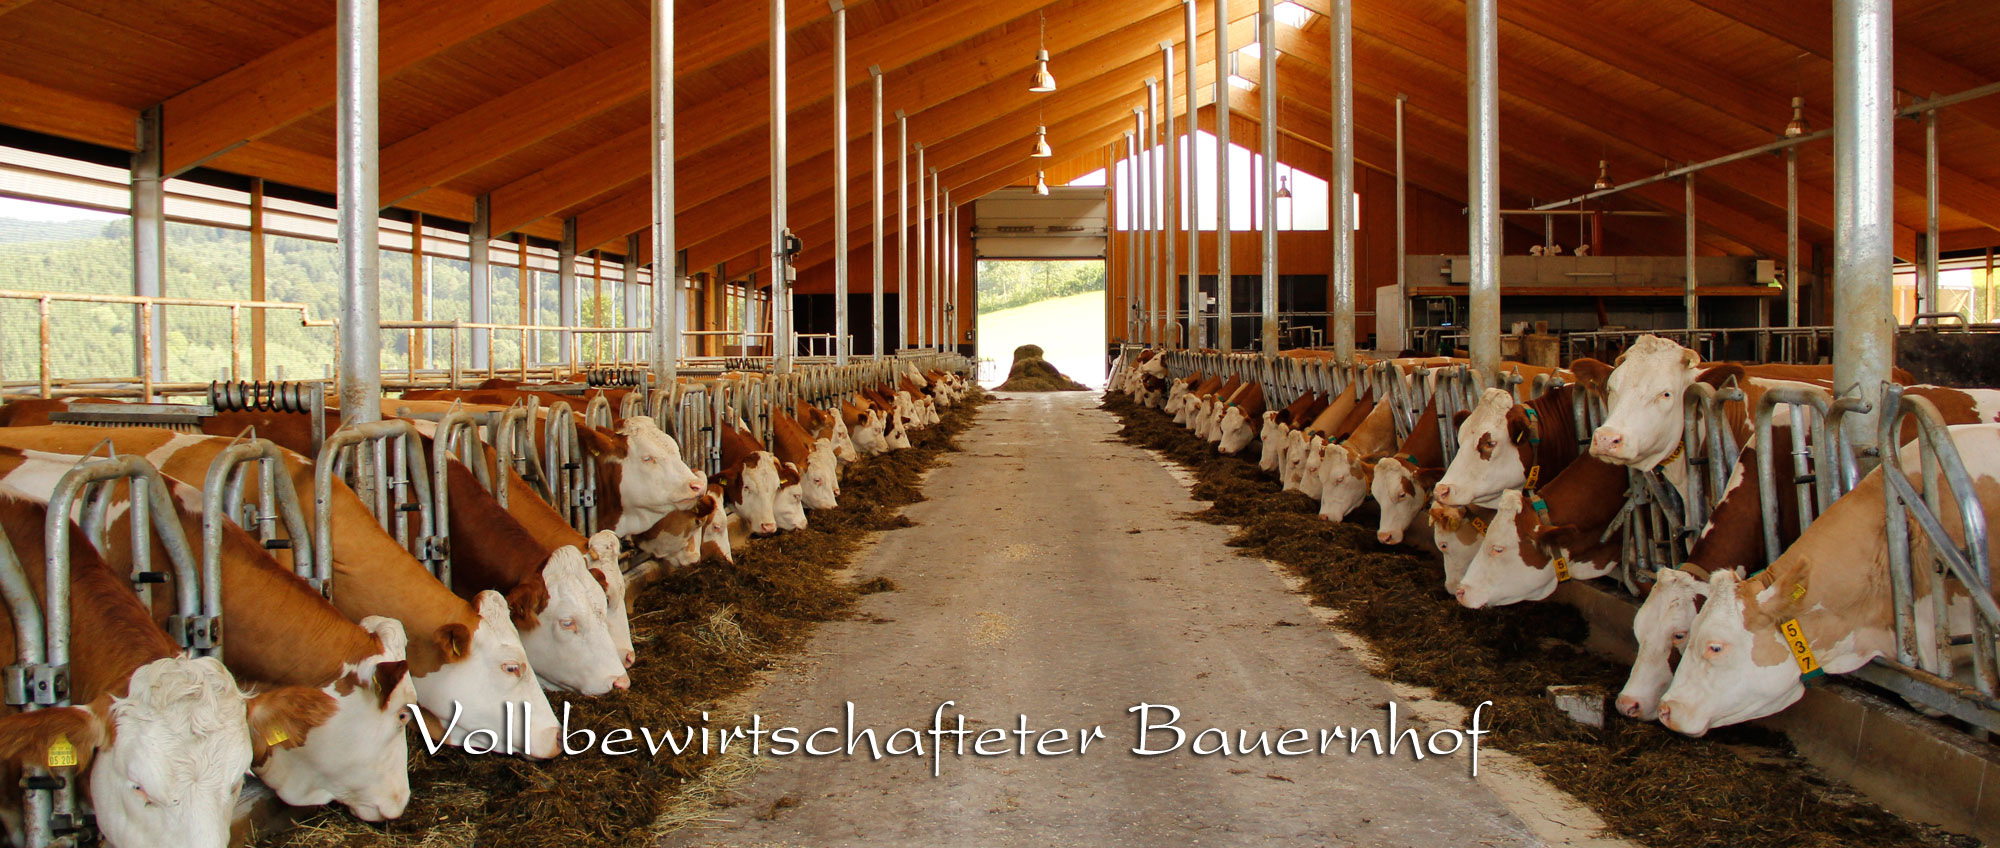 Urlaub auf einem voll bewirtschafteten Bauernhof in Bayern